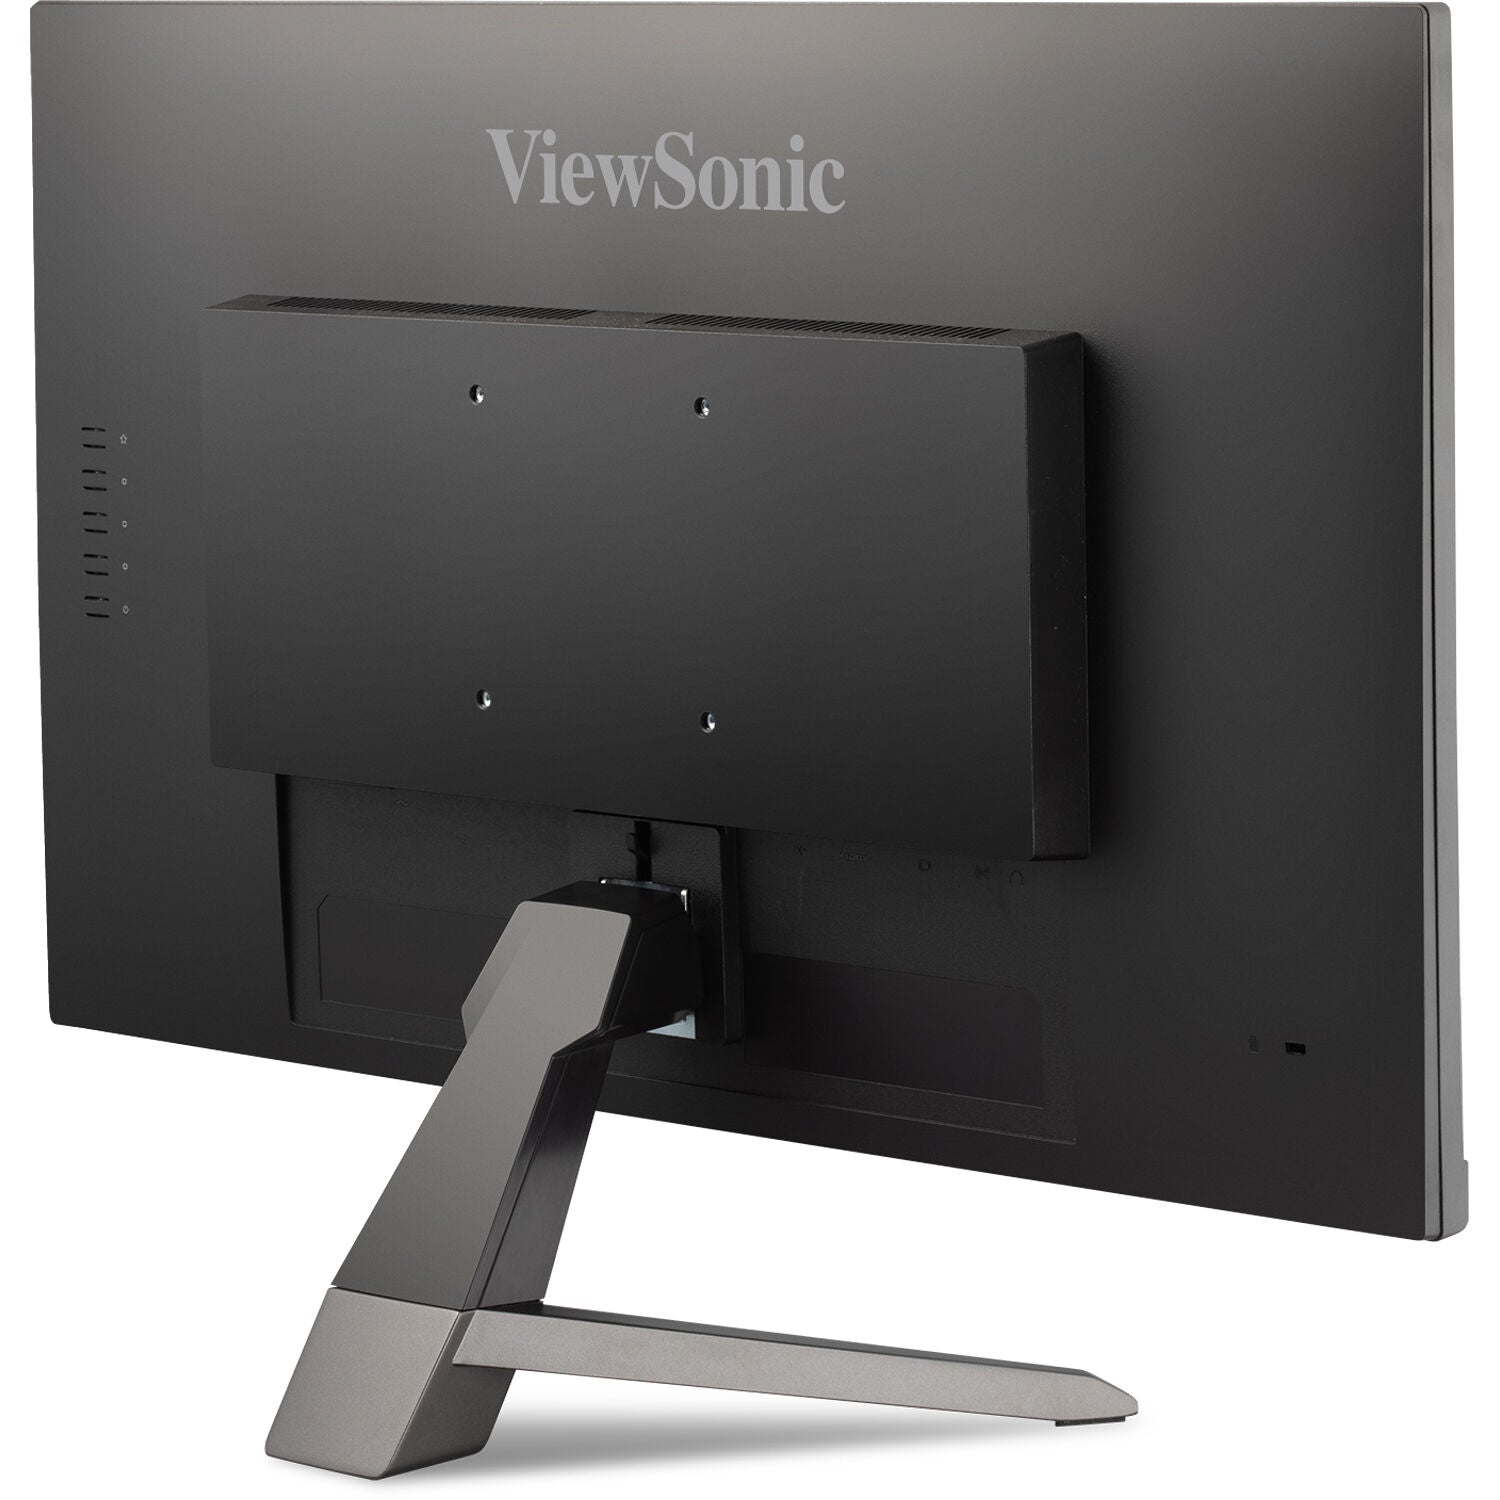 ViewSonic VX2467-MHD-S 24" 16:9 FreeSync 1080p Gaming VA Monitor - Certified Refurbished